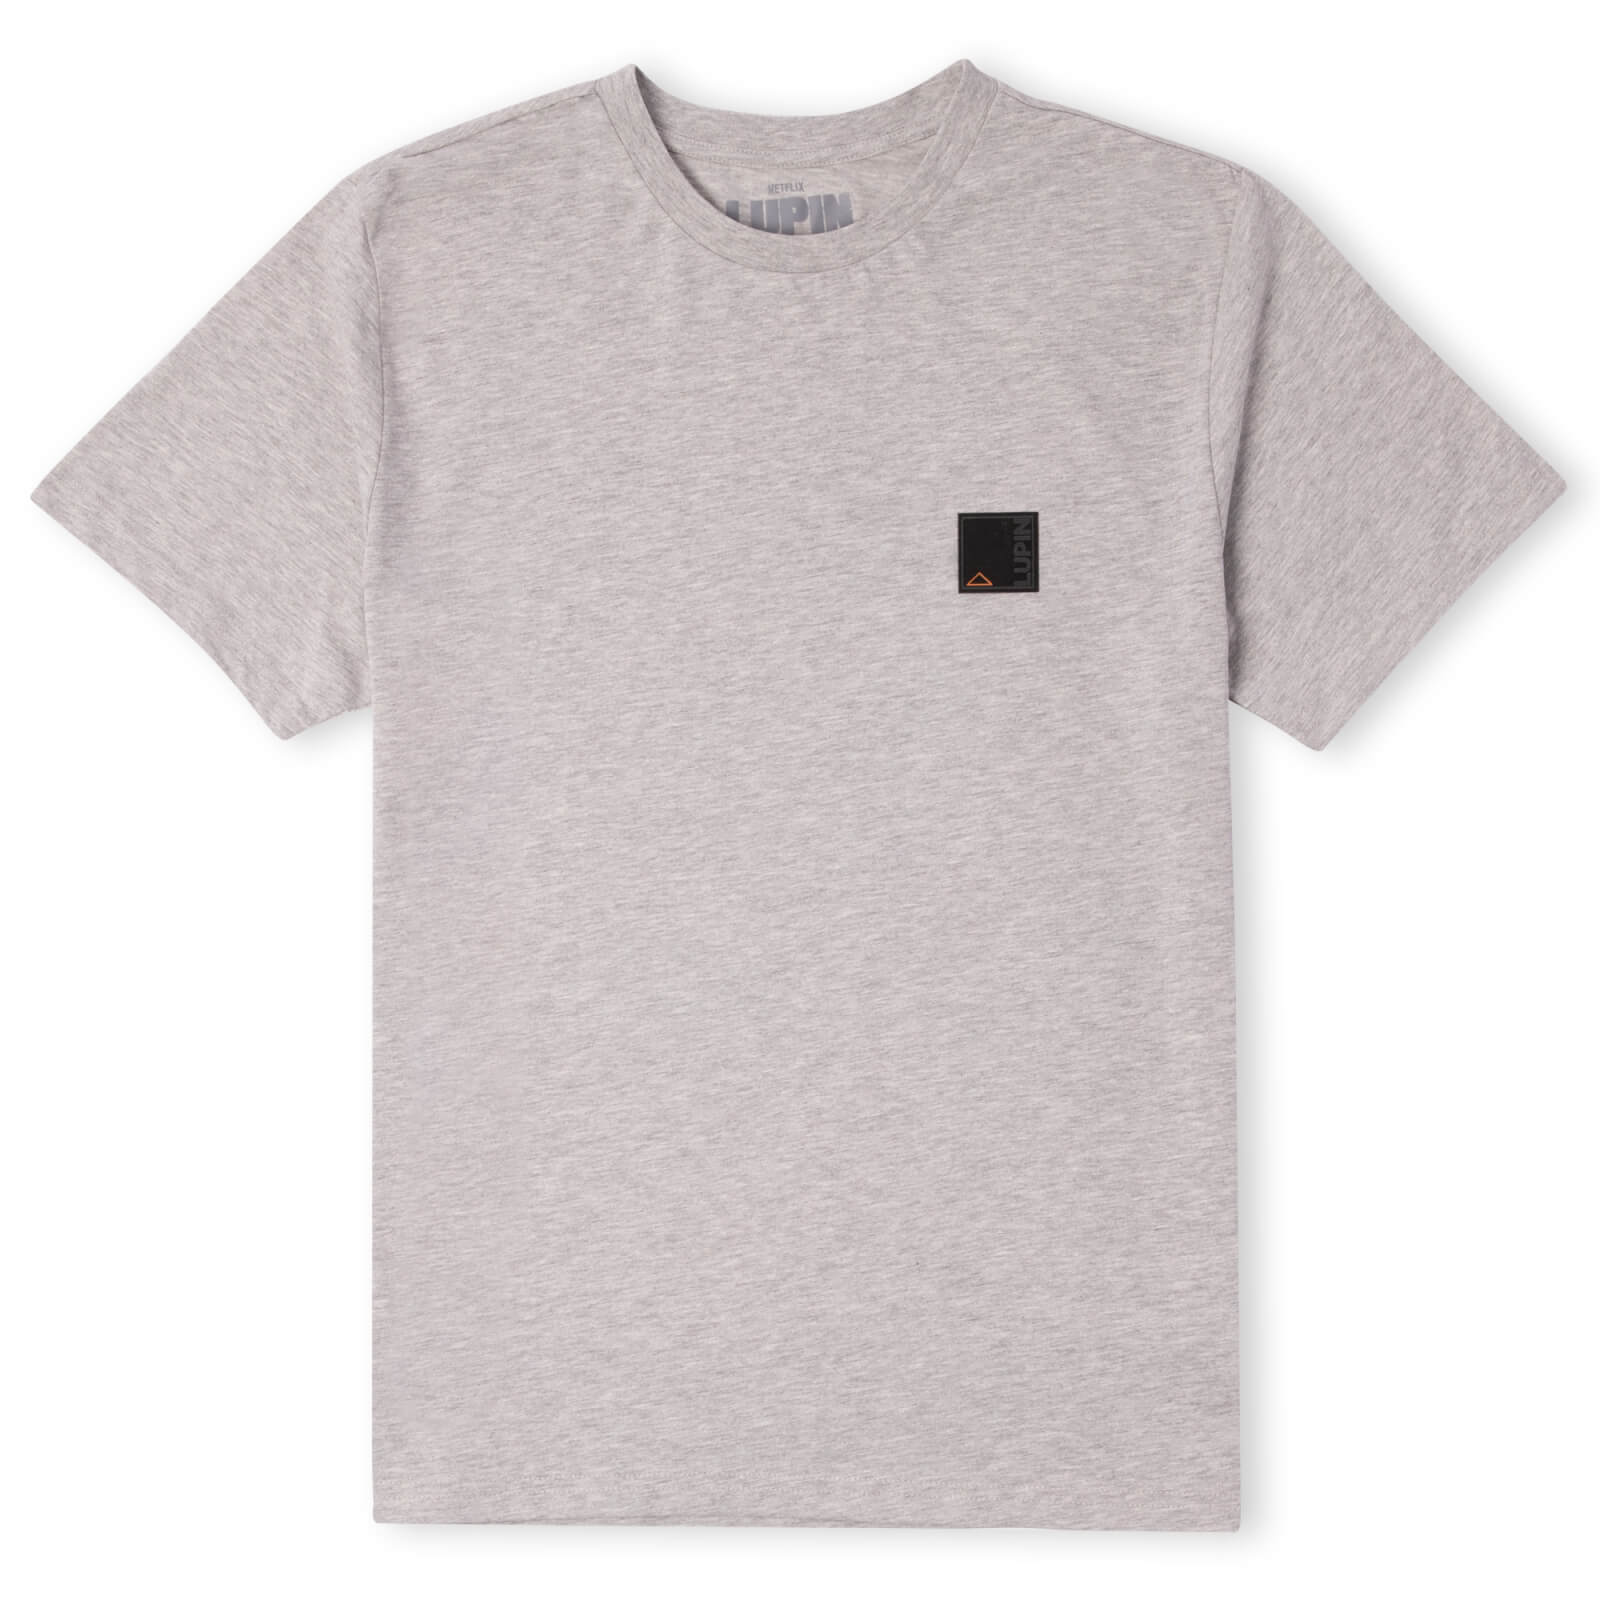 Lupin Multi Slogan Unisex T-Shirt - Grey - XS